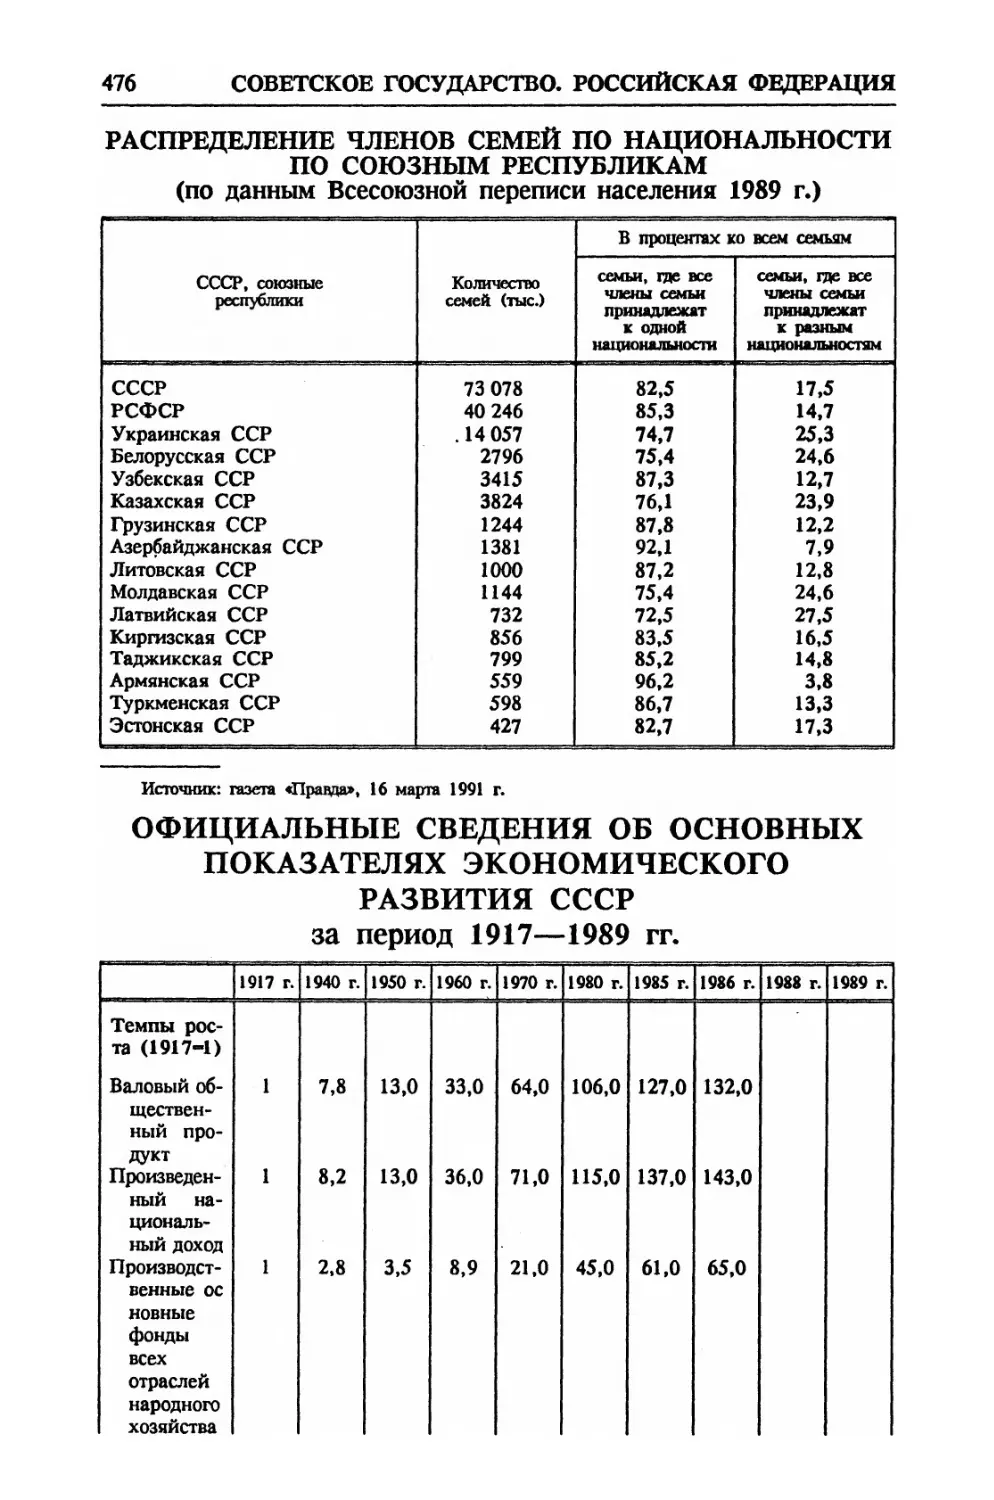 Официальные сведения об основных показателях экономического развития СССР за период 1917—1989 гг